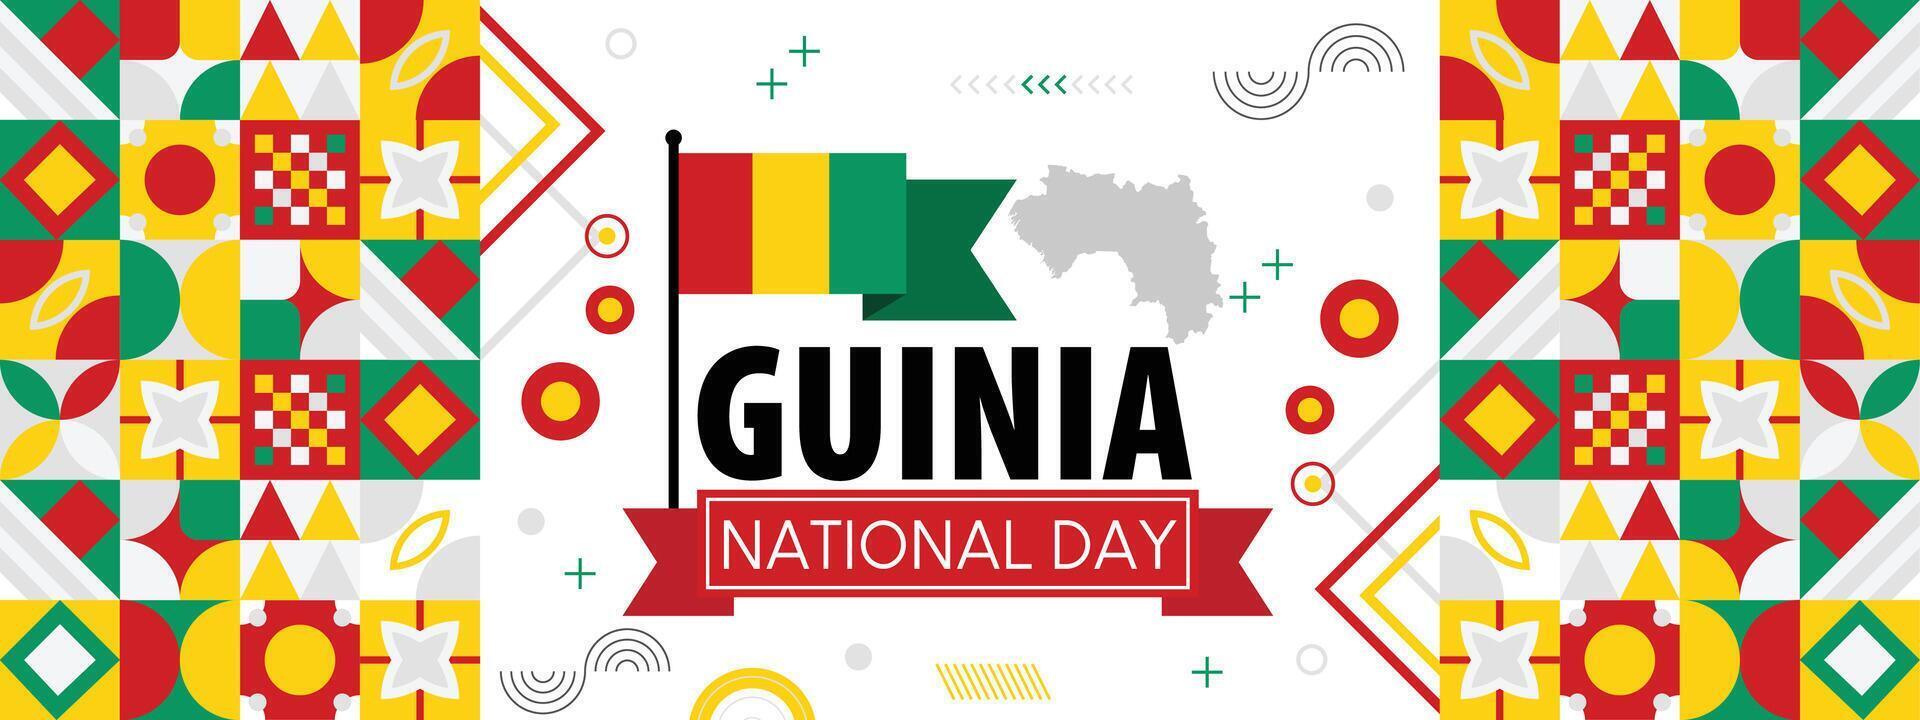 Guinea nacional o independencia día bandera para país celebracion. bandera y mapa de Guinea. moderno retro diseño con tiporgafia resumen geométrico iconos vector